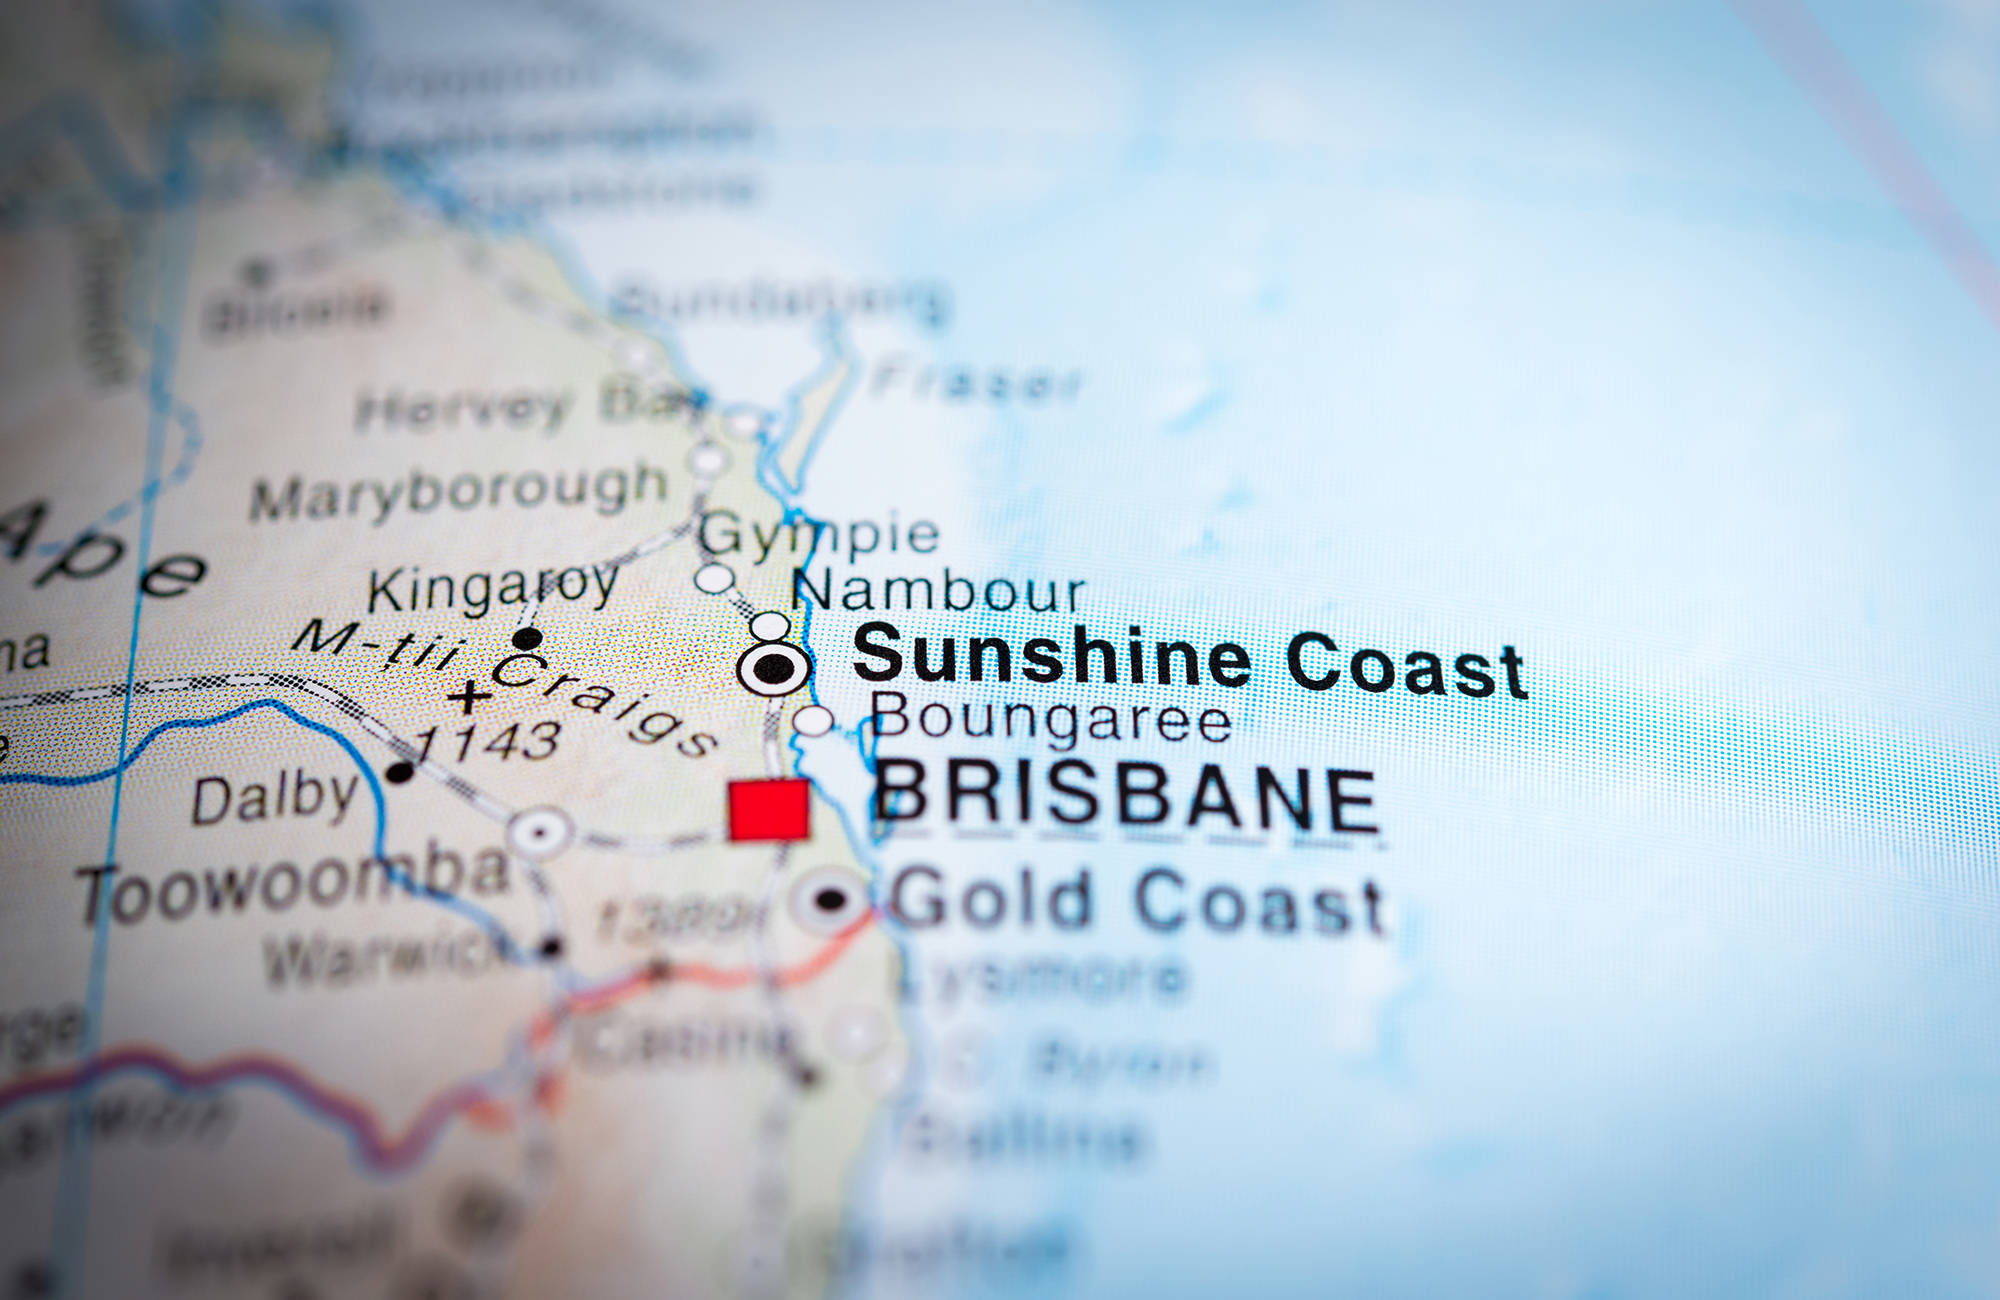 Studera på Sunshine Coast och bli granne med Boungaree och Nambour som visat på denna karta